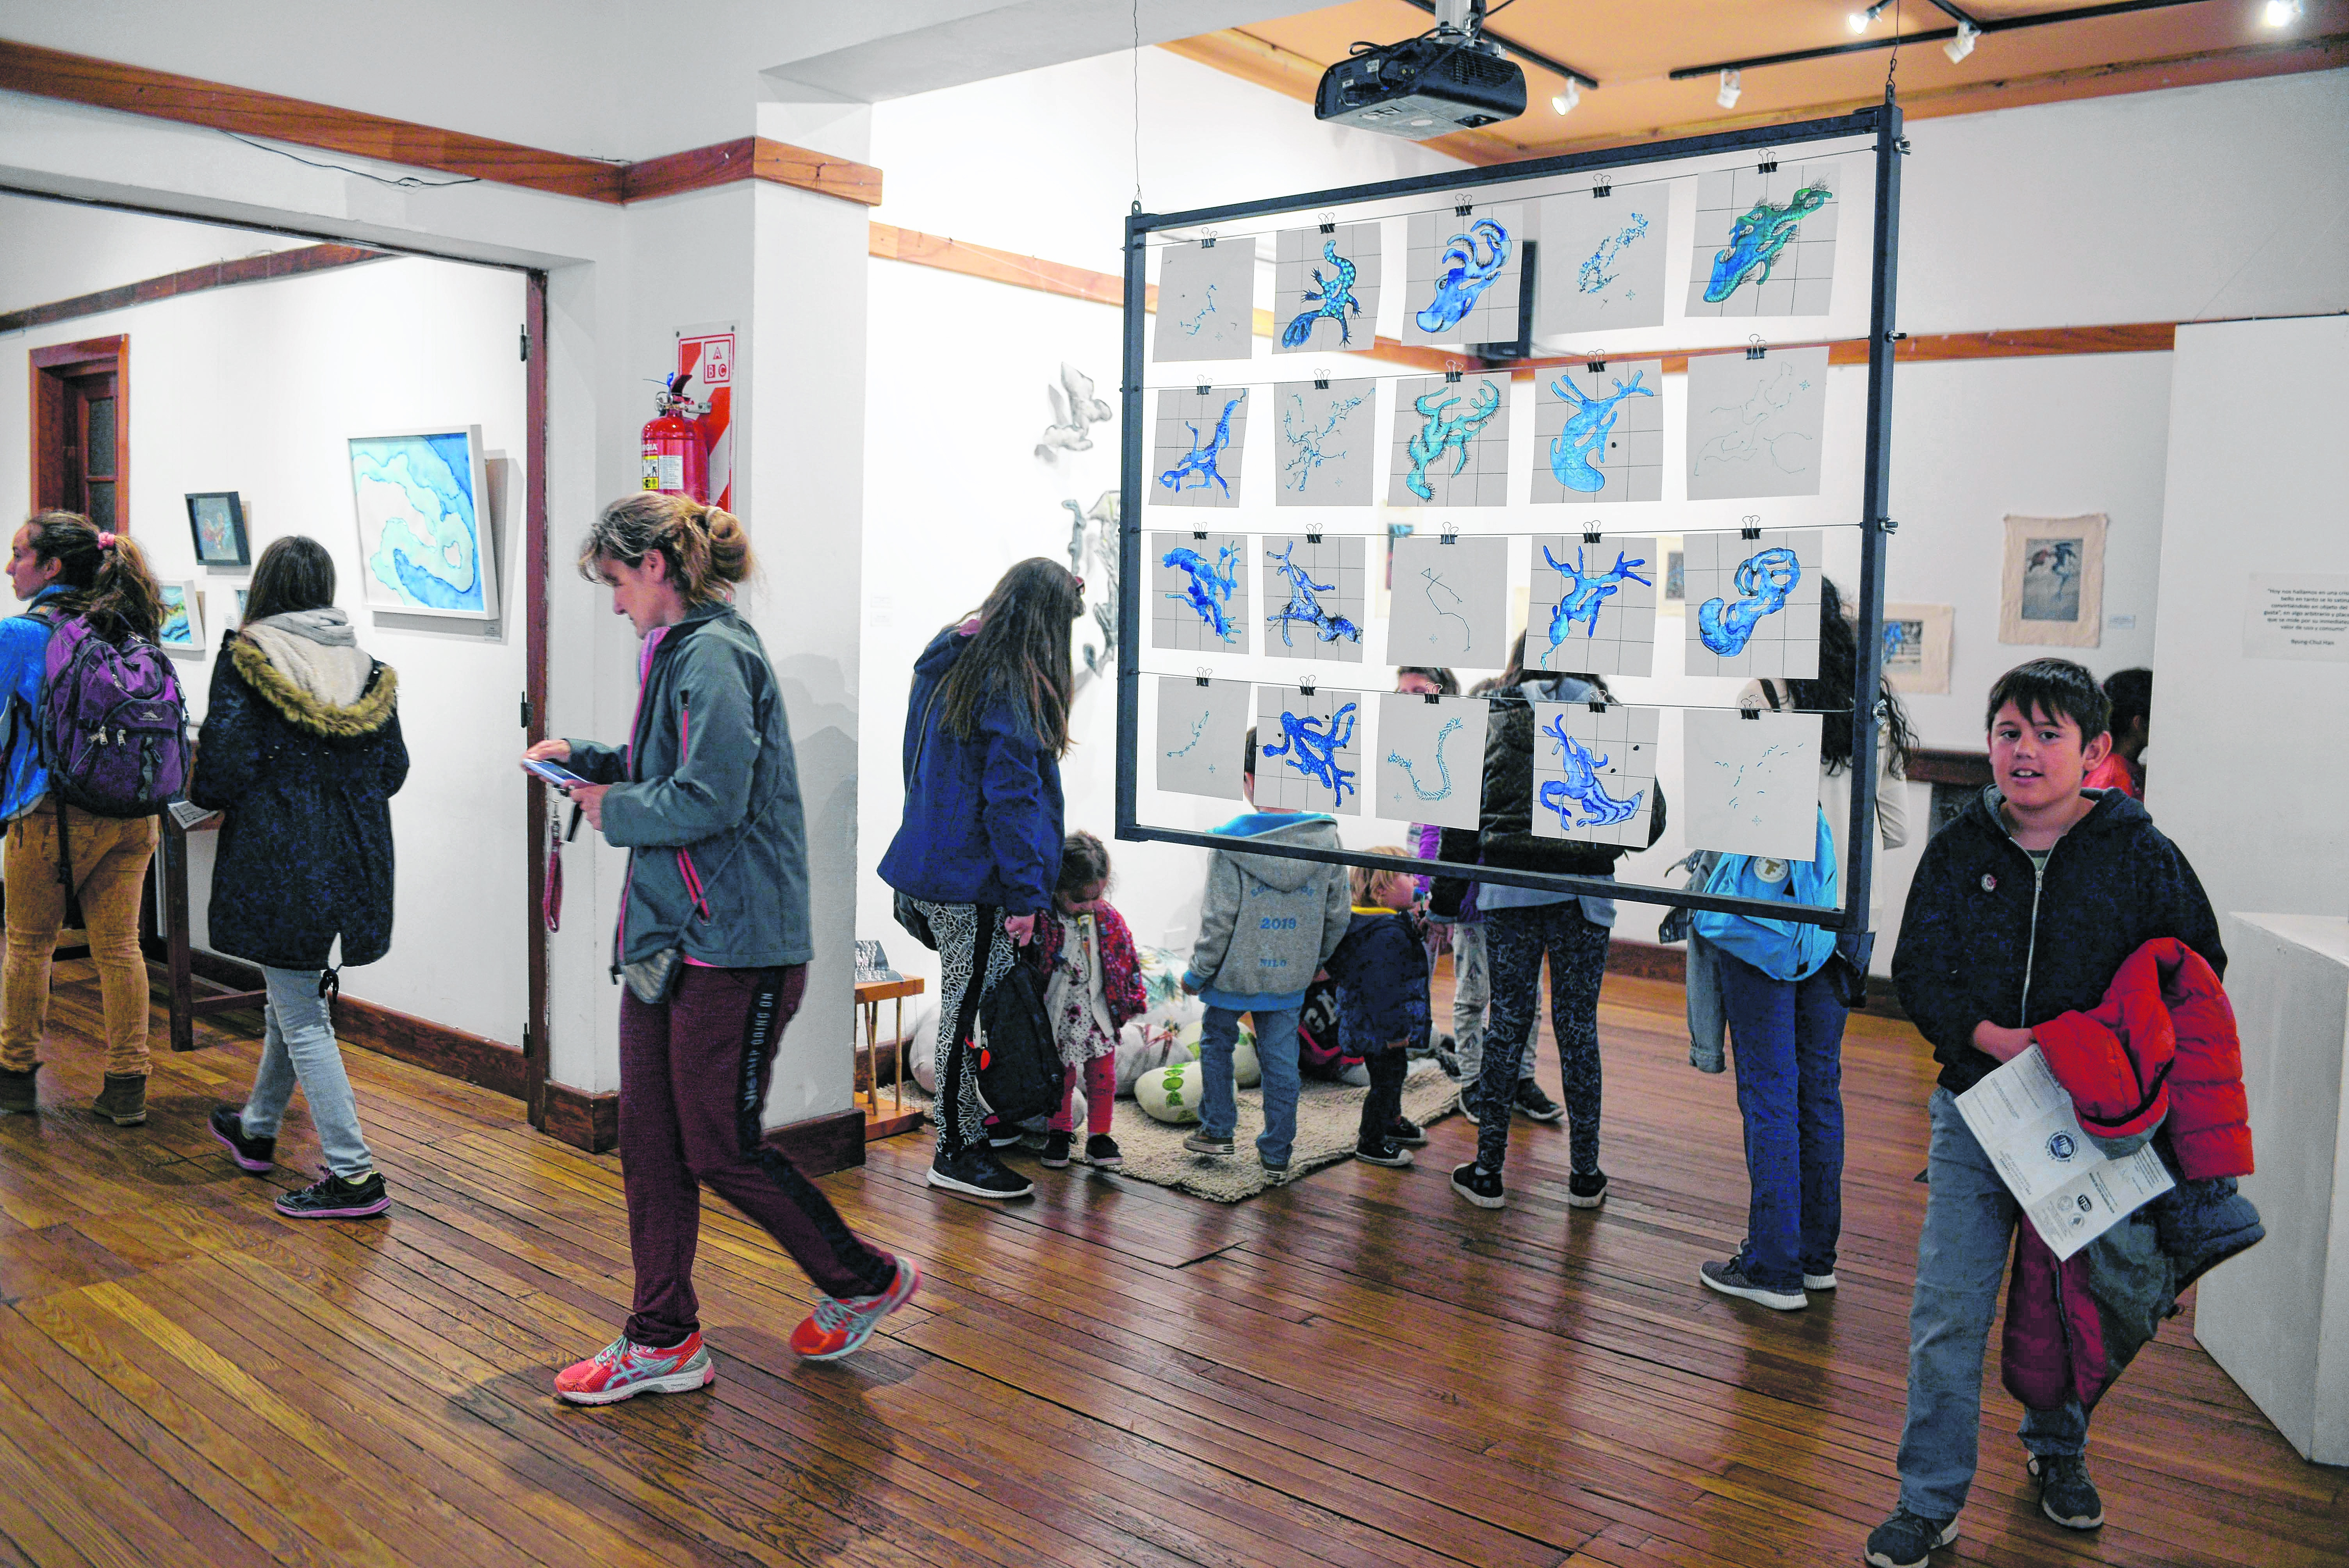 Niños y adultos disfrutan de la exposición artística en una de las salas del Centro Cívico. Foto: Alfredo Leiva